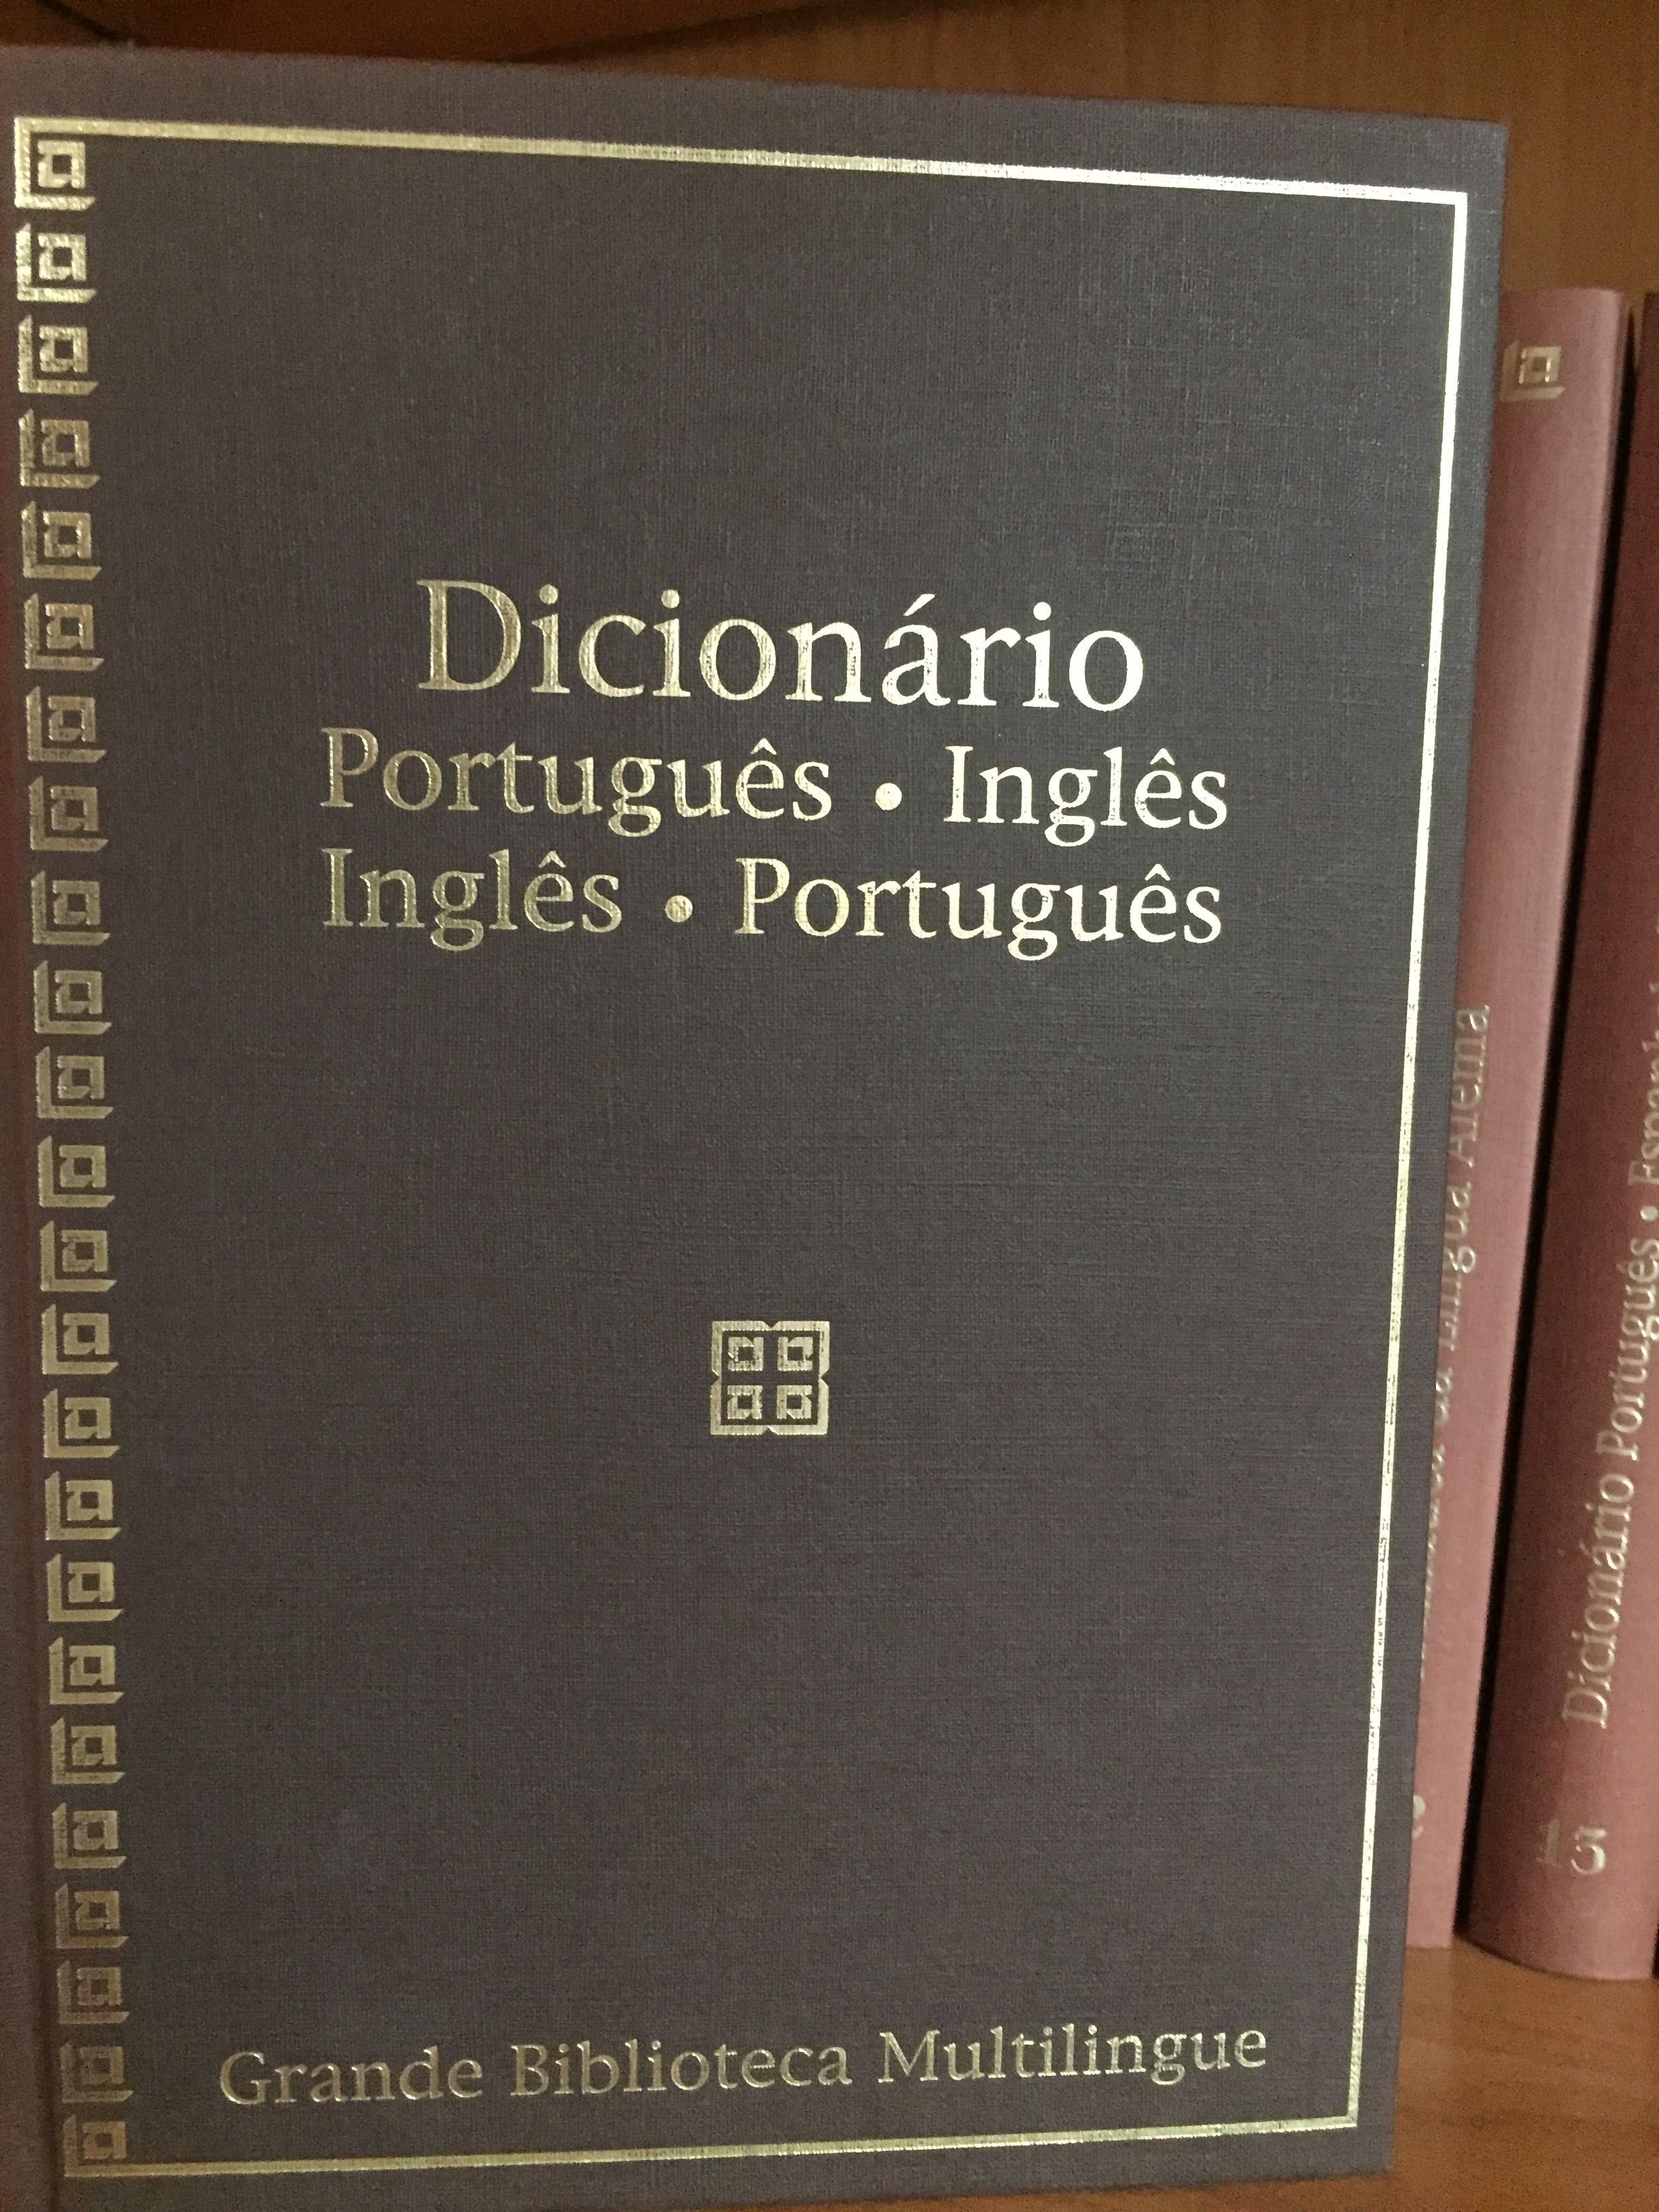 Grande Biblioteca Multilingue (18 volumes)